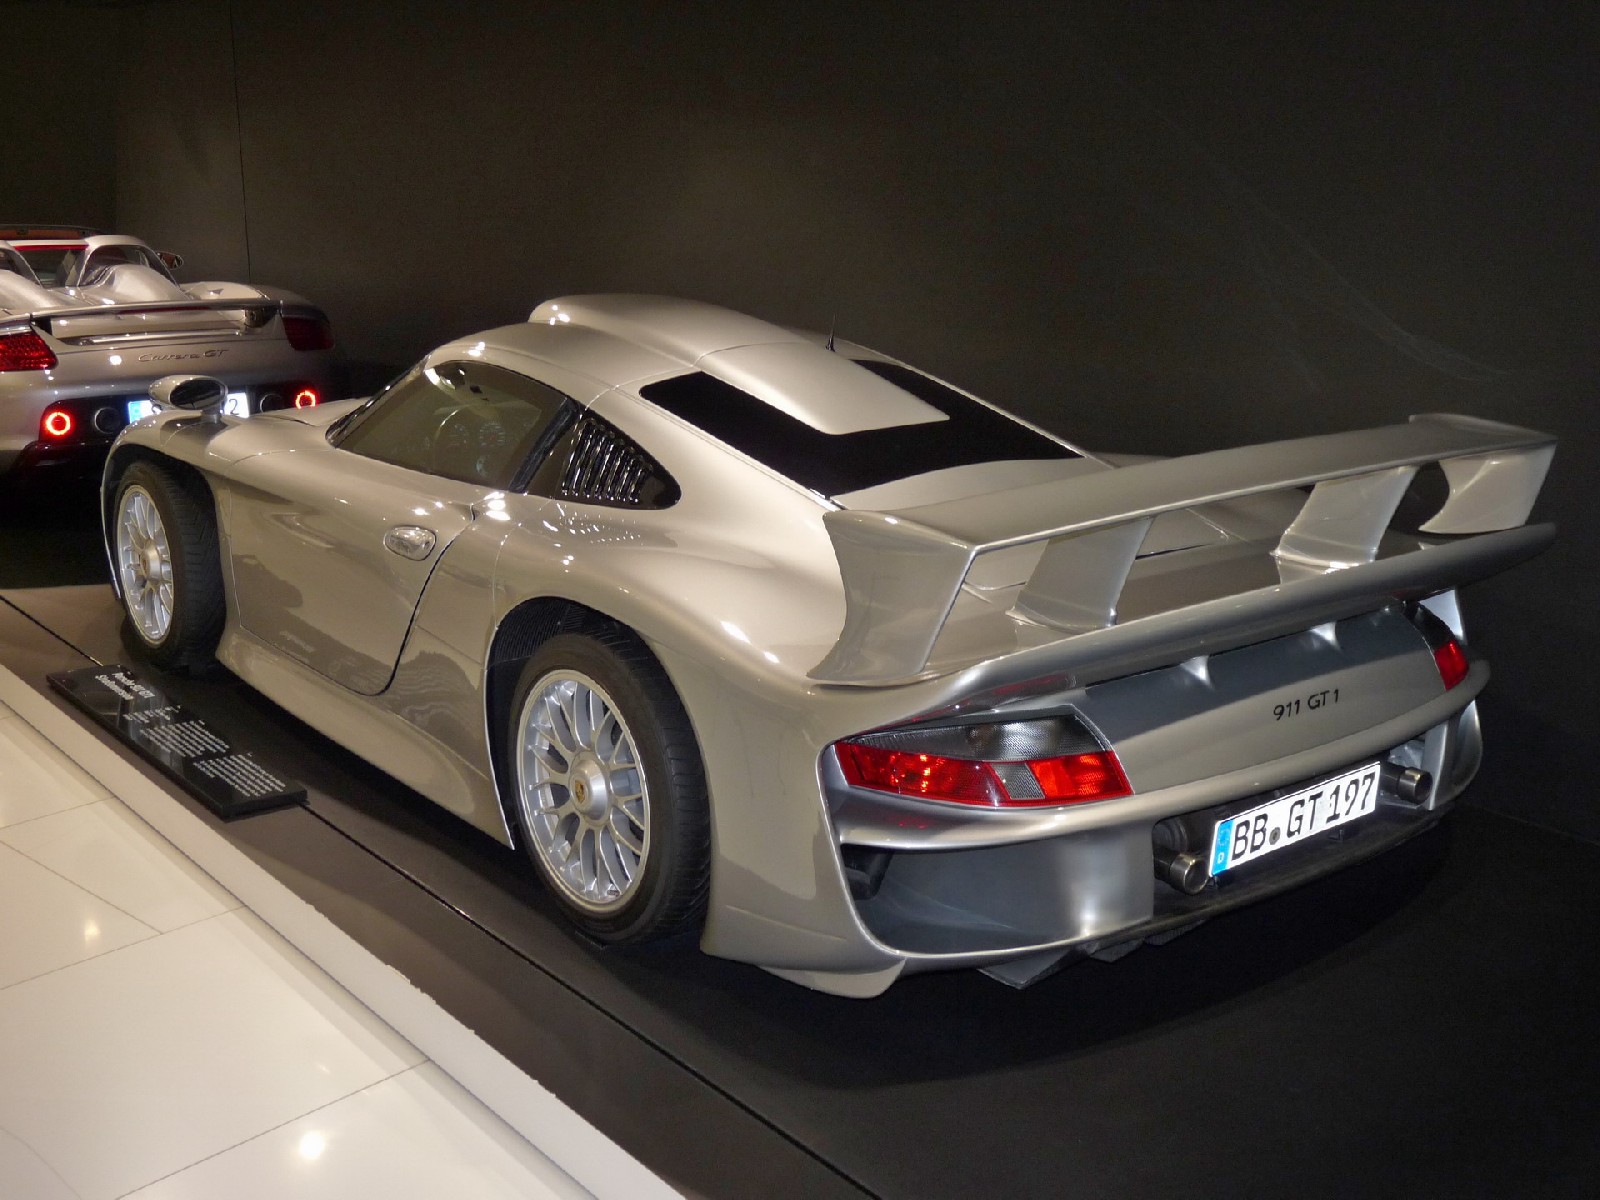 Porsche 911 1600x1200.  Tapeta, tapetka, wallpaper, pozad, wallpaper na plochu